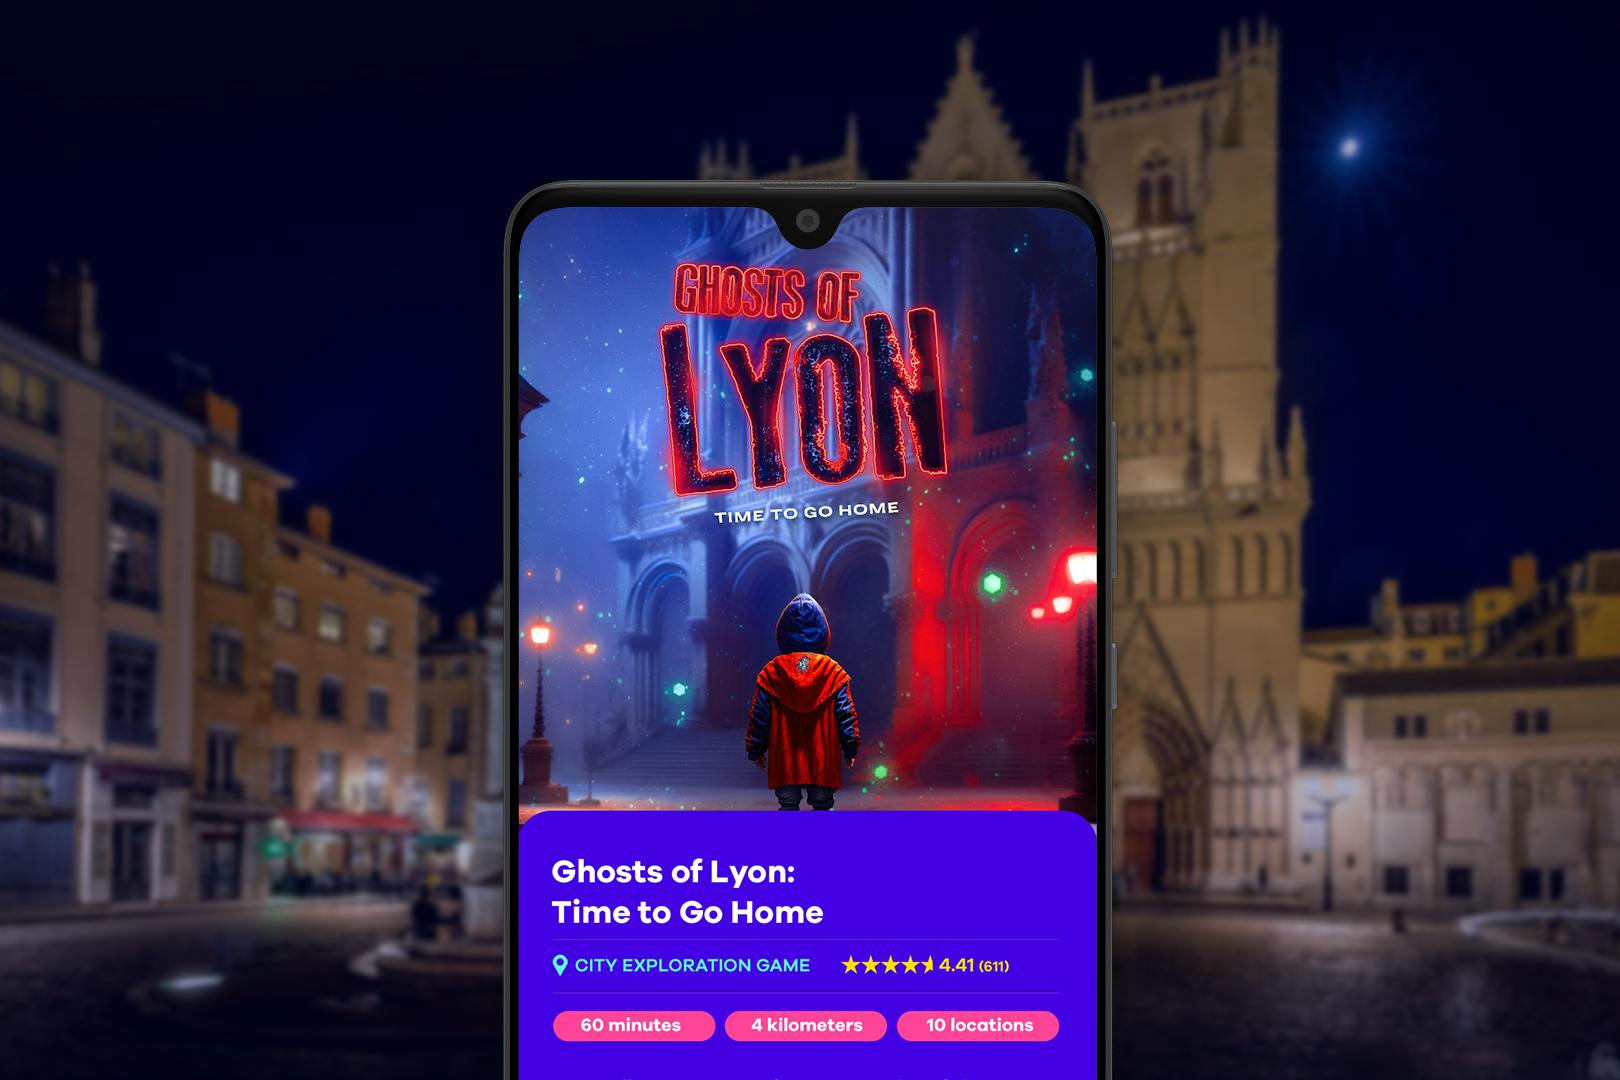 Lyon assombrados lugares e histórias de fantasmas - jogo da cidade